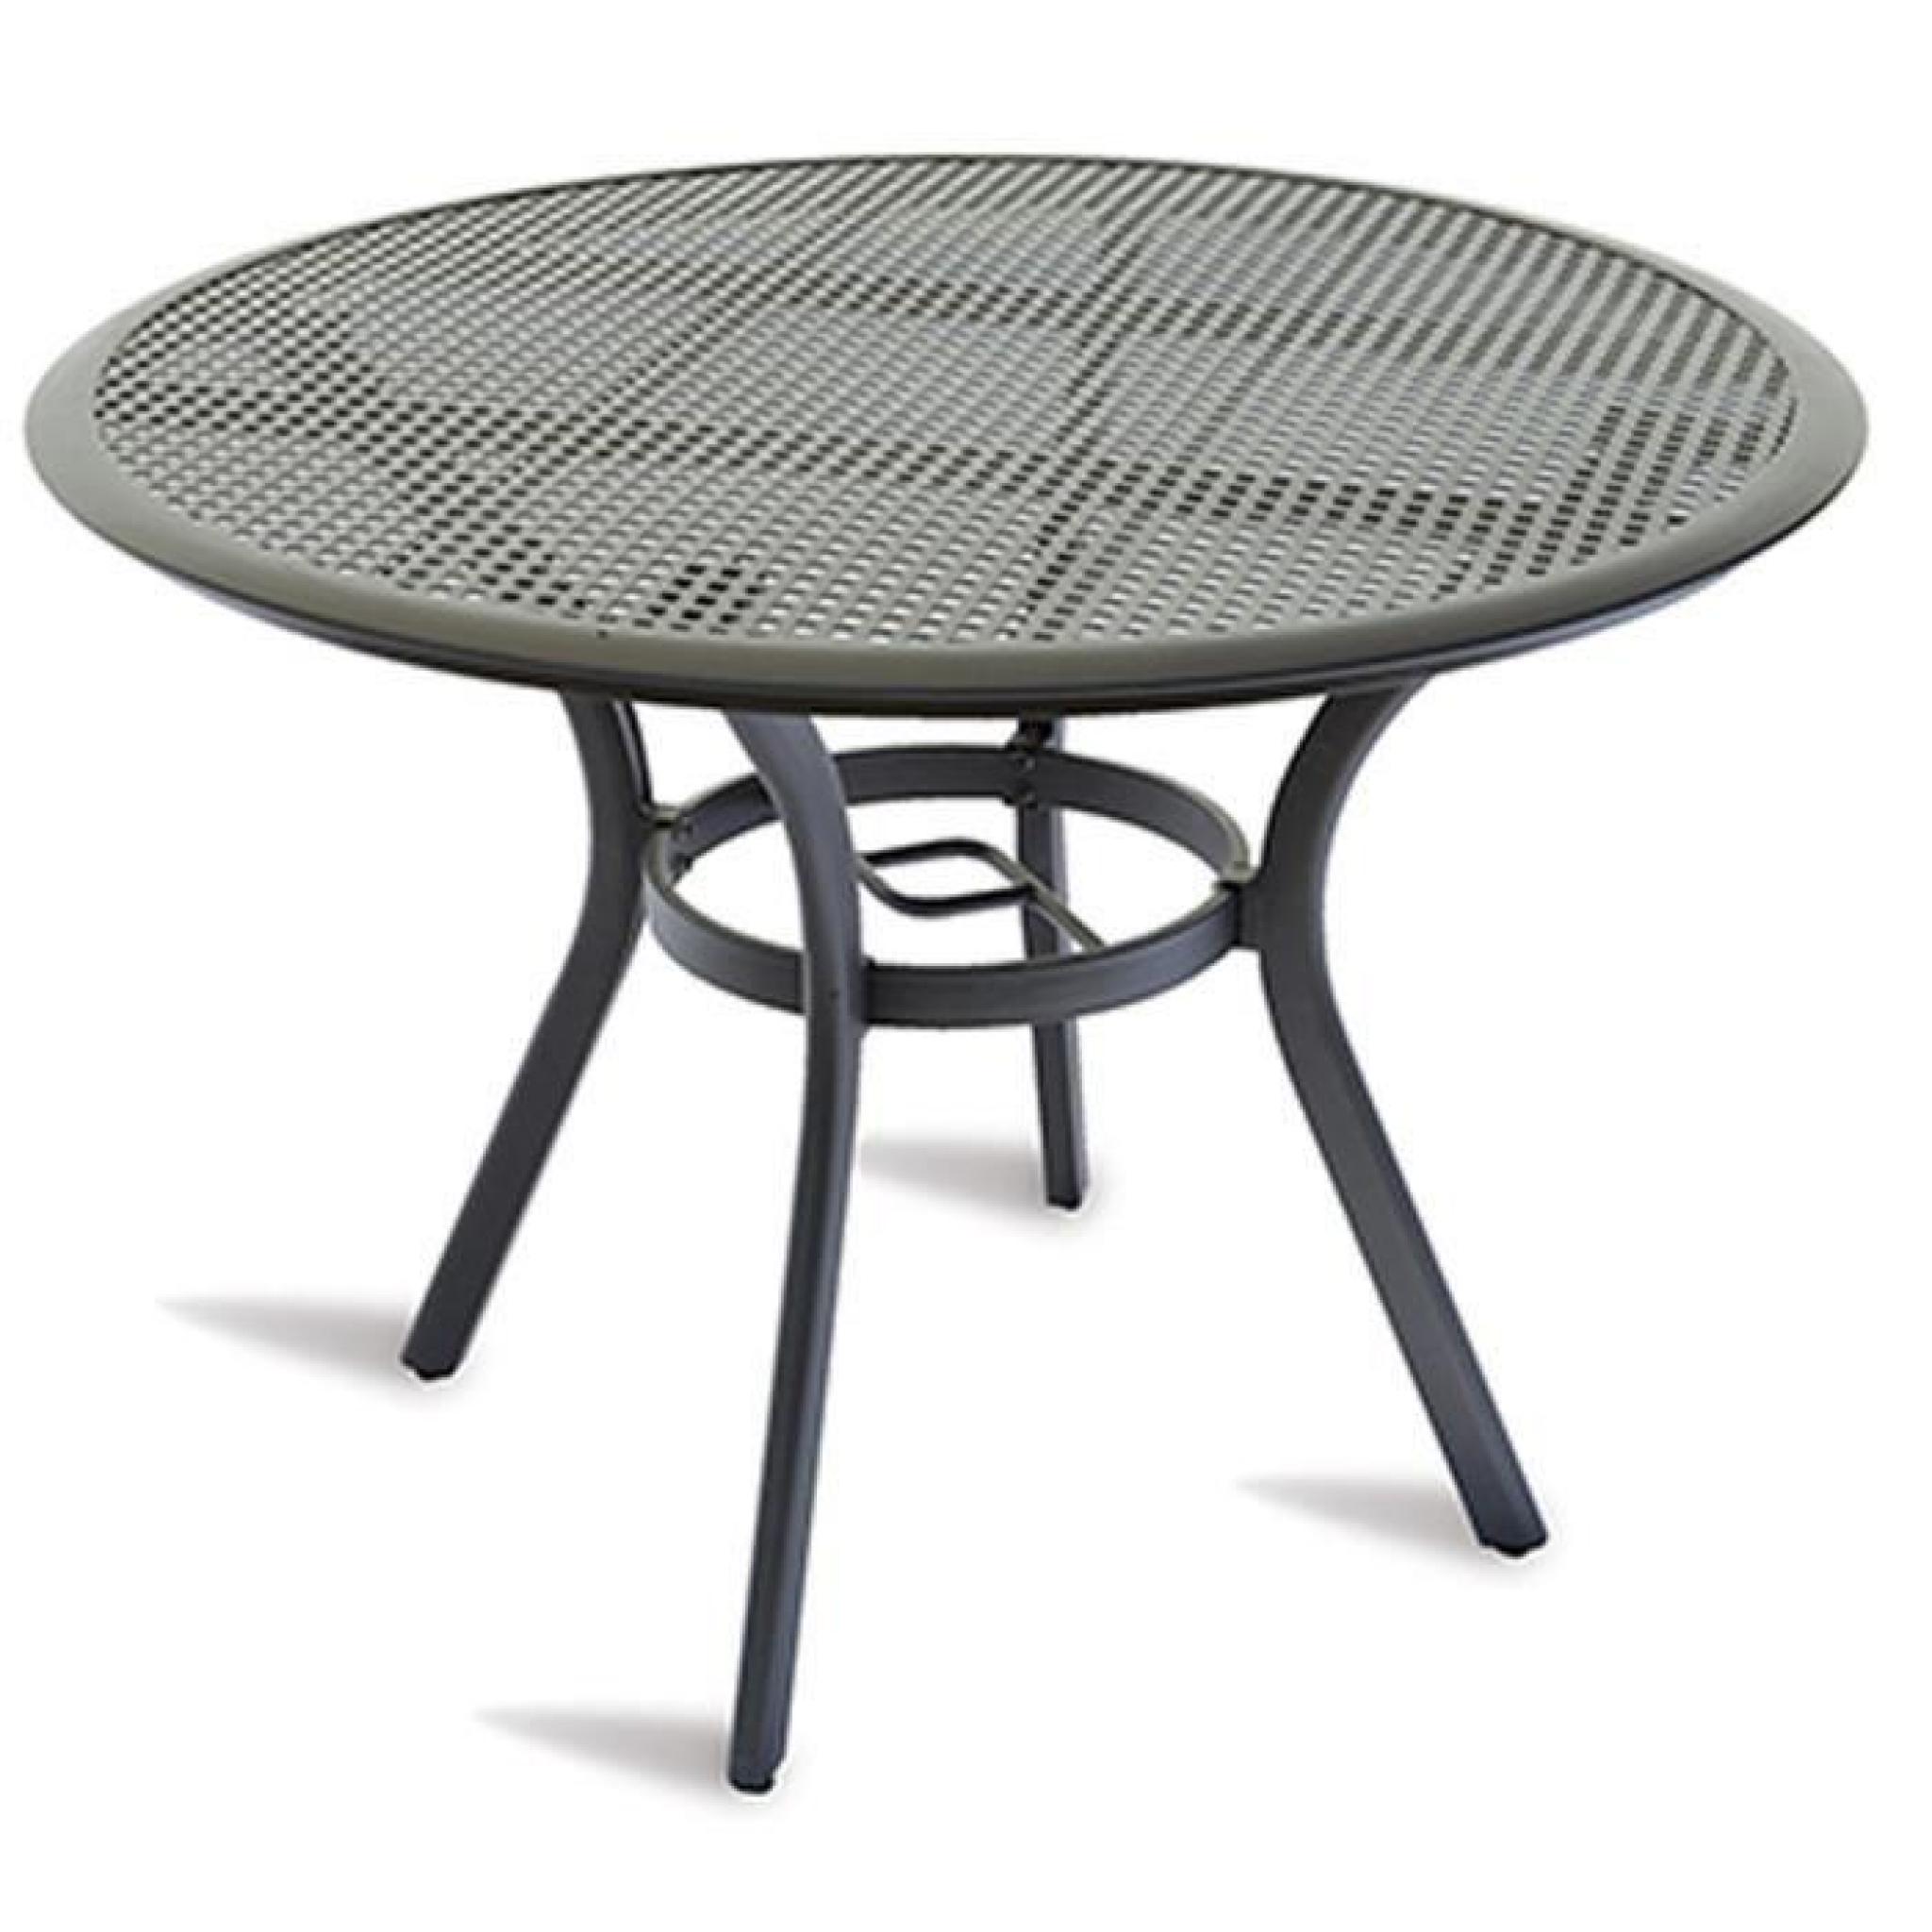 Table de jardin en aluminium coloris gris anthracite - Dim : H 73 x Ø 106 cm